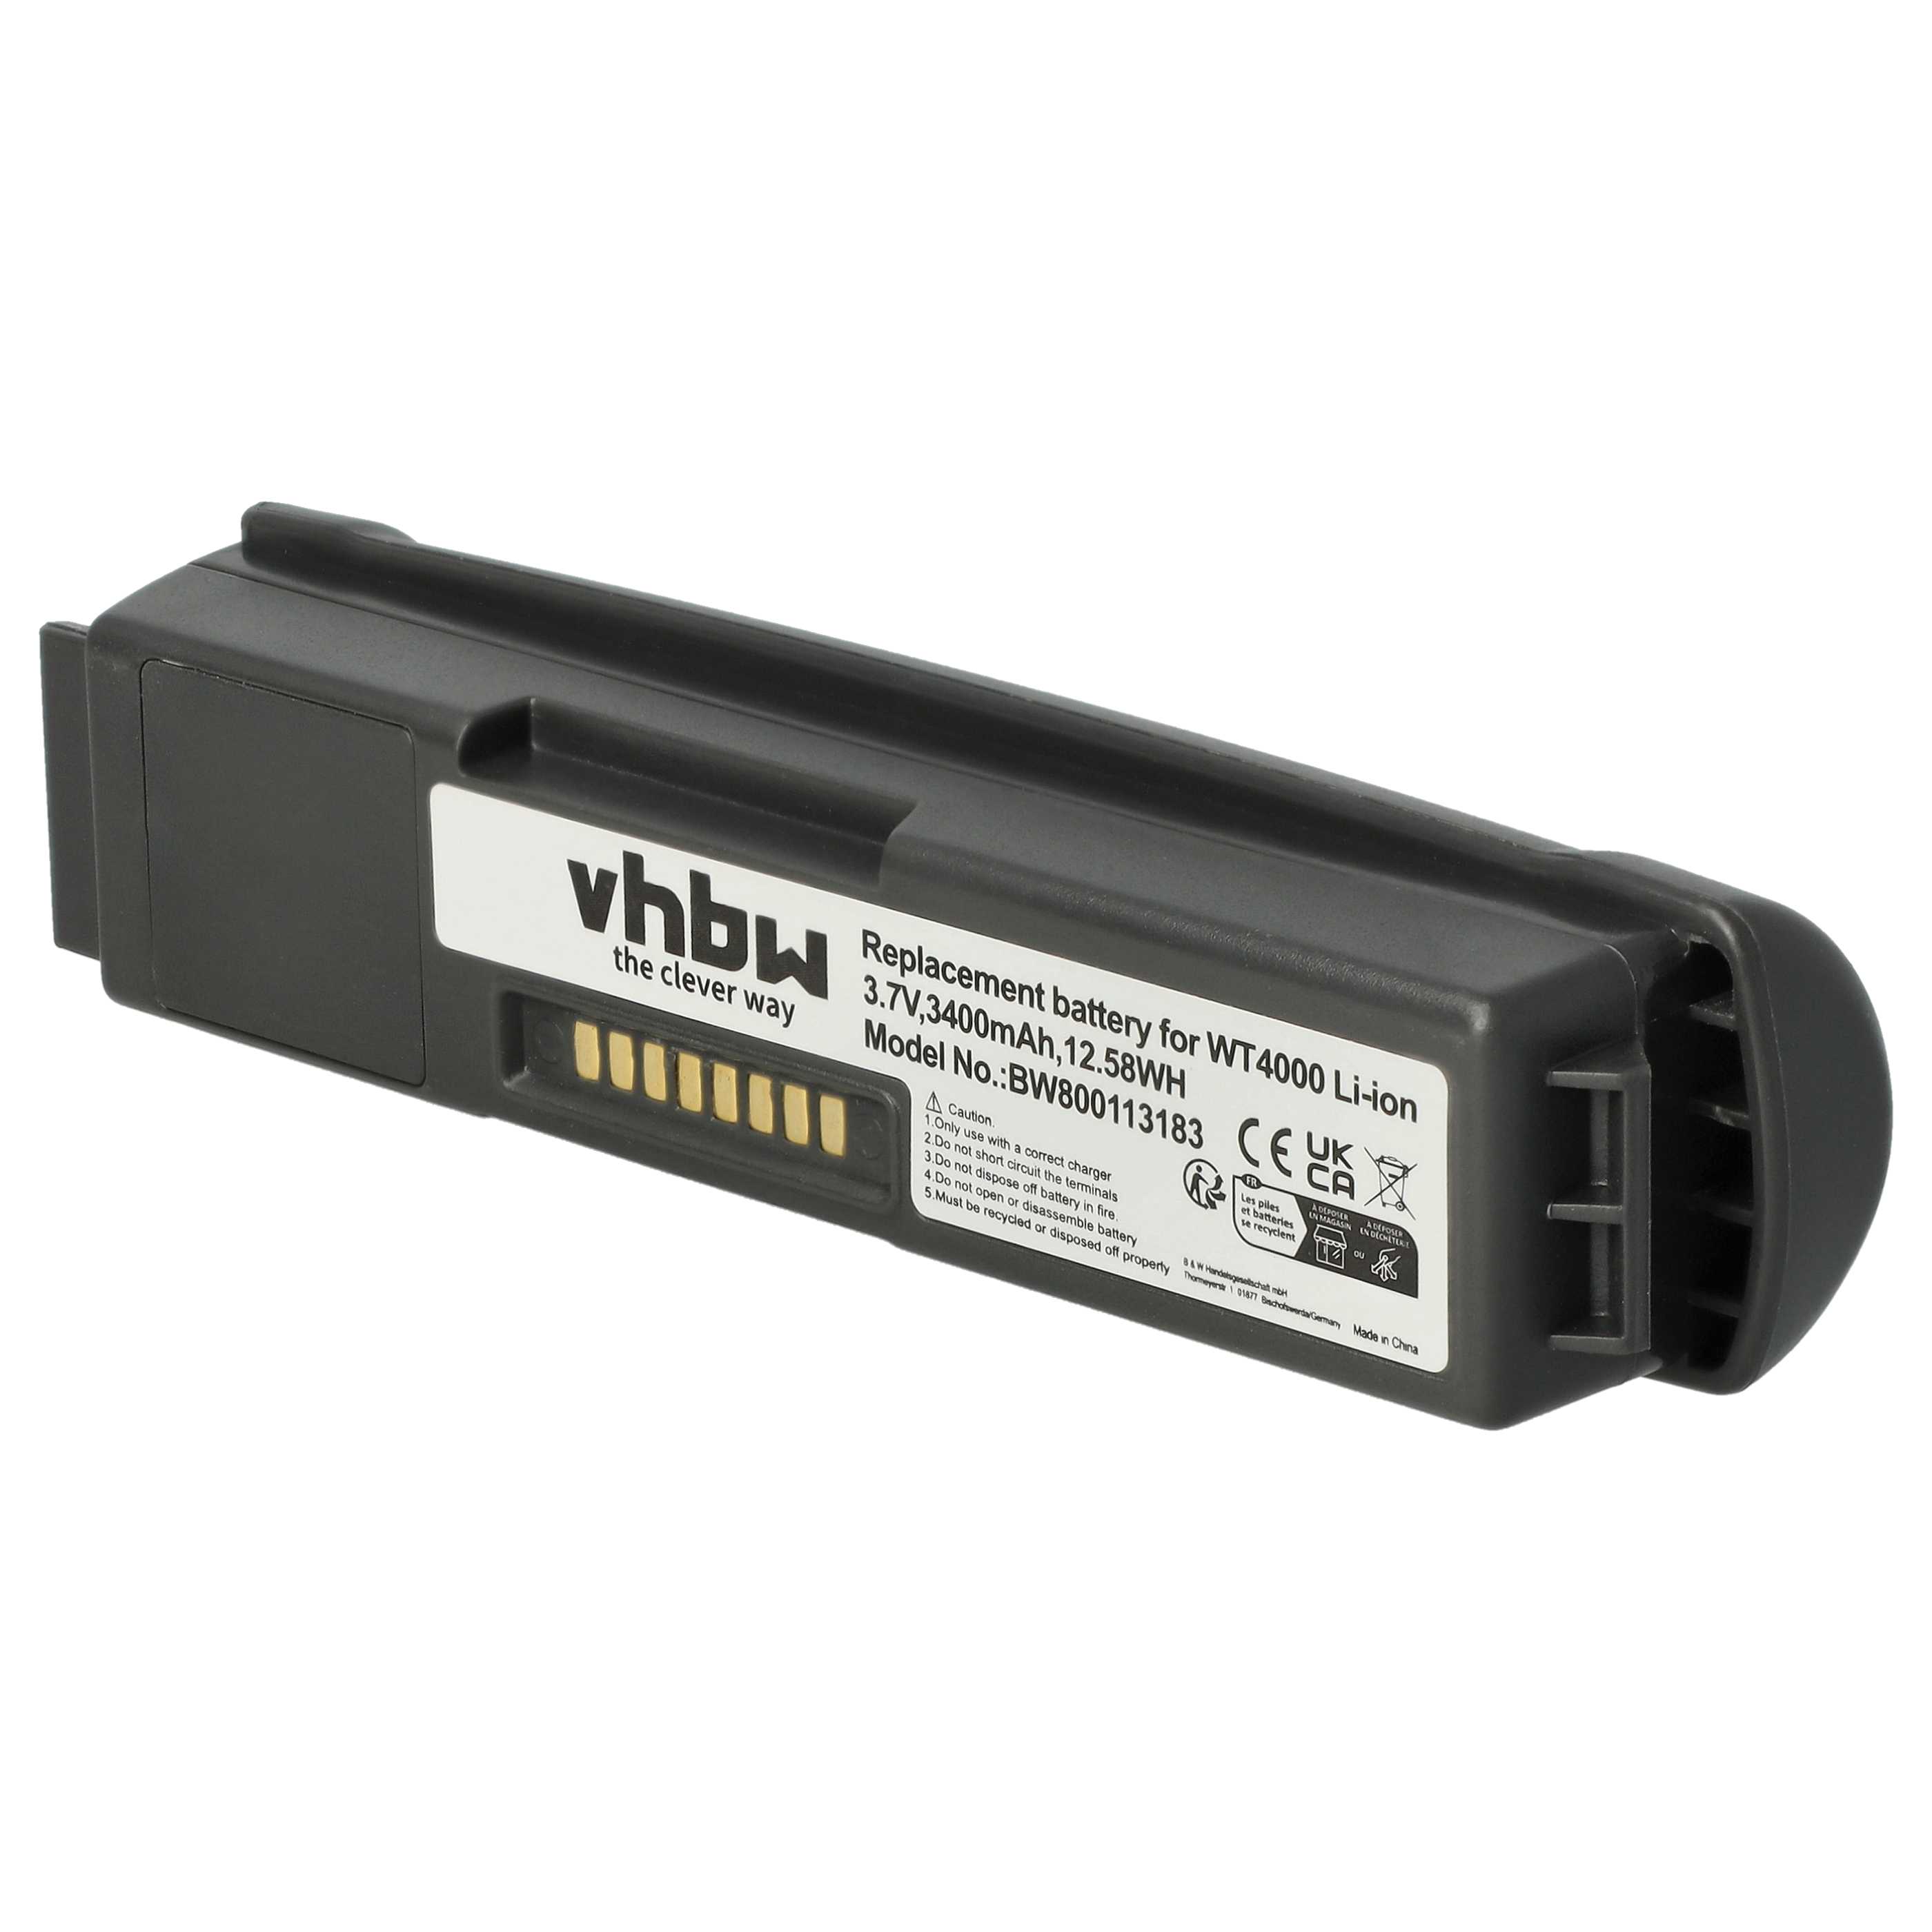 Batterie remplace Symbol 55-000166-01, 82-90005-03 pour scanner de code-barre - 3400mAh 3,7V Li-ion